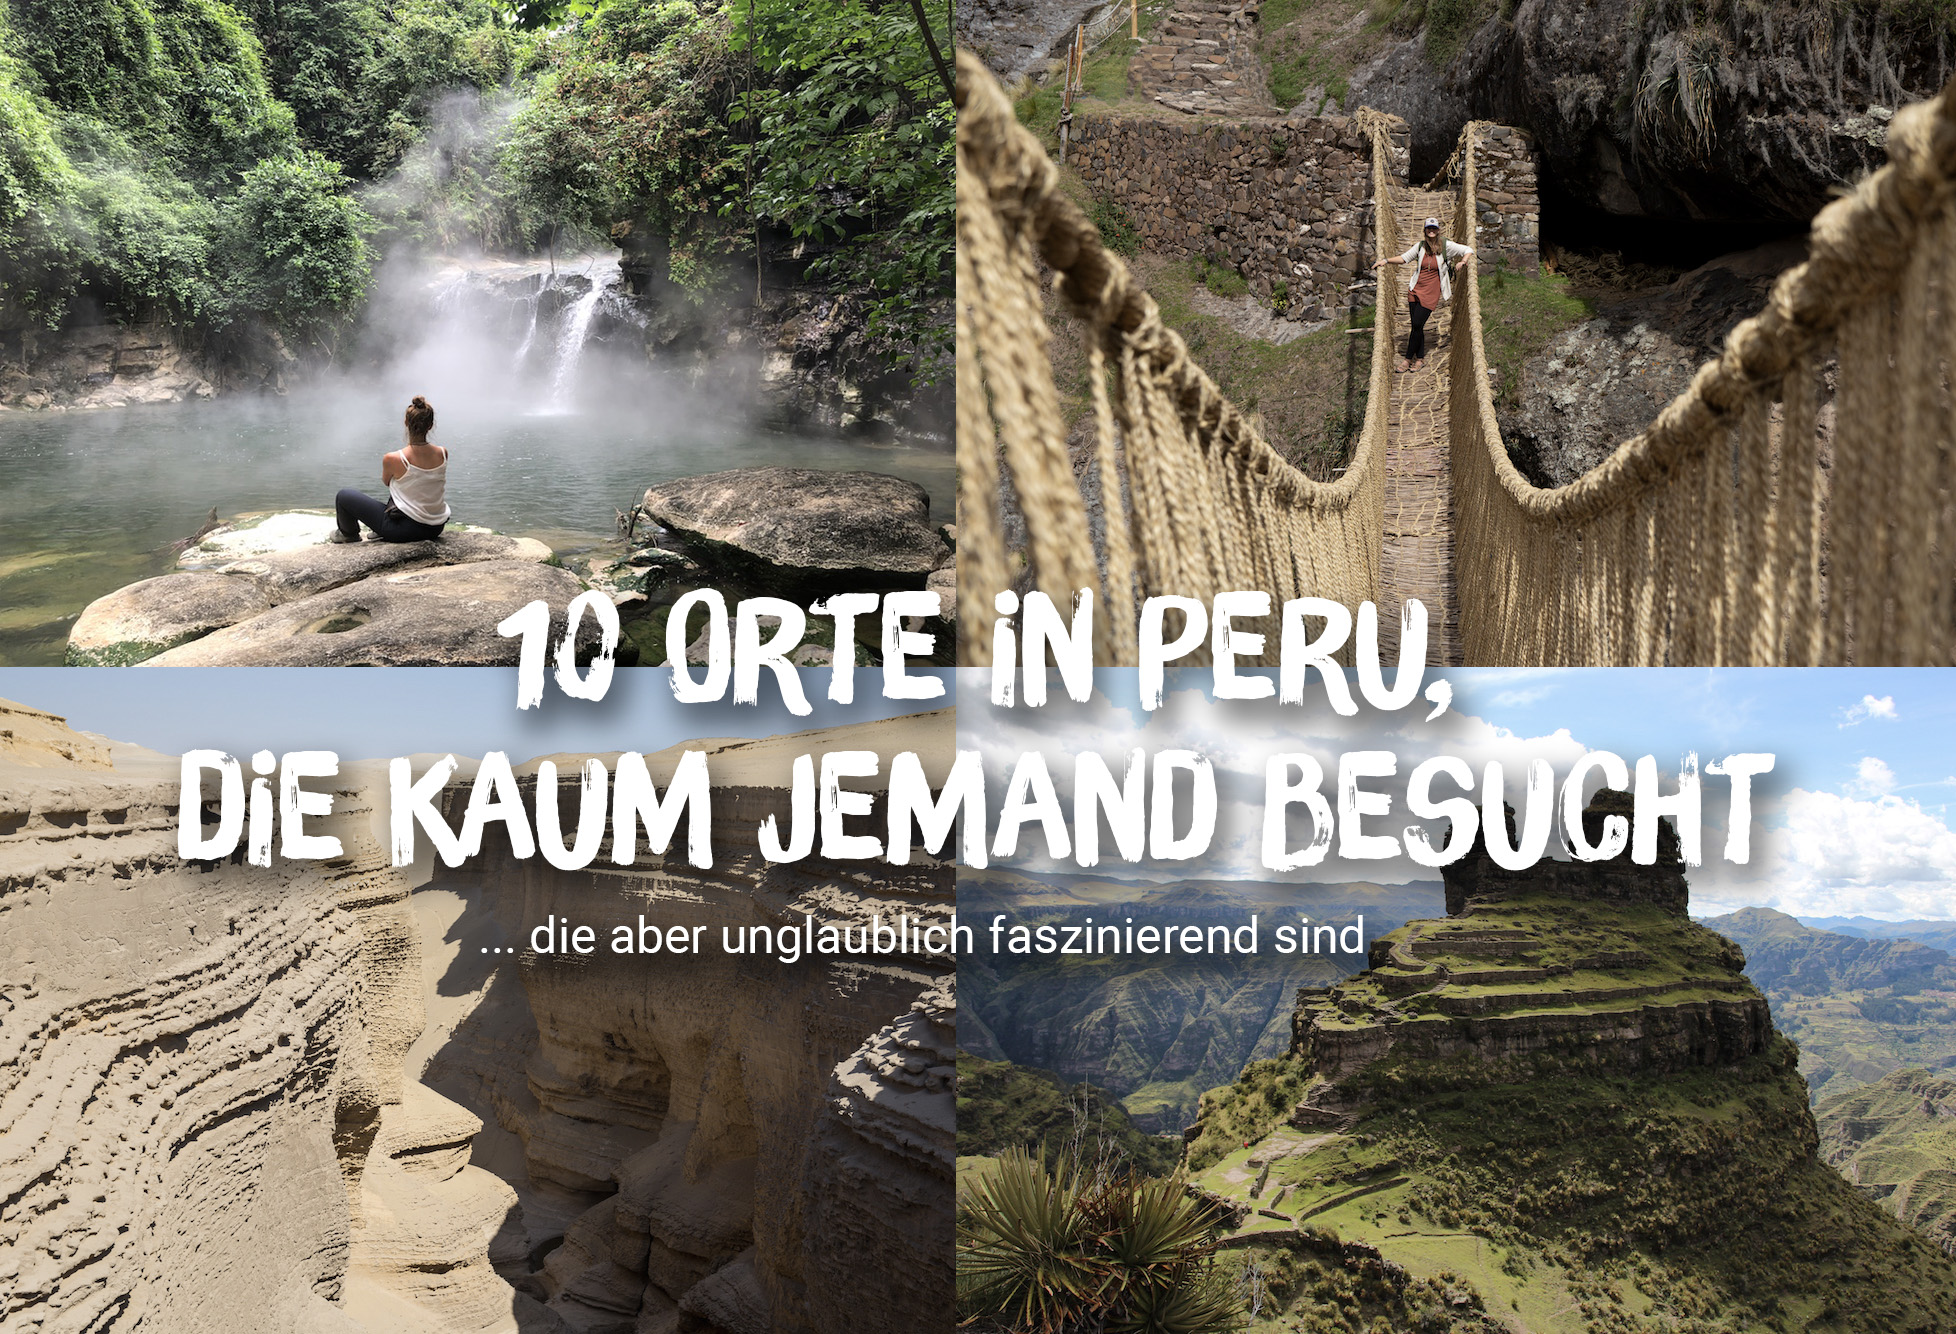 10 faszinierende Orte in Peru, die kaum jemand besucht